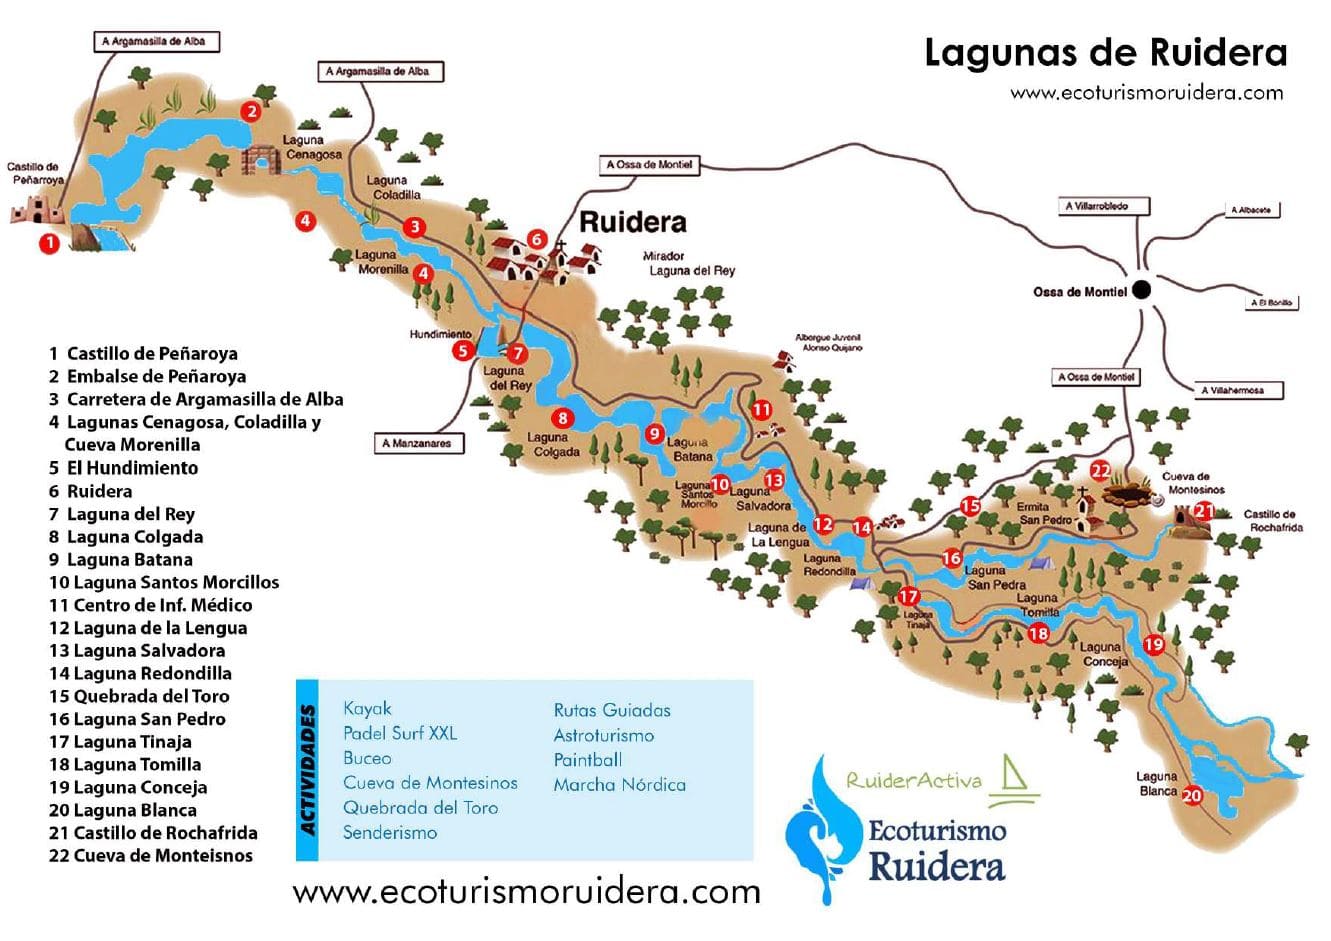 Mapa de las Lagunas de Ruidera